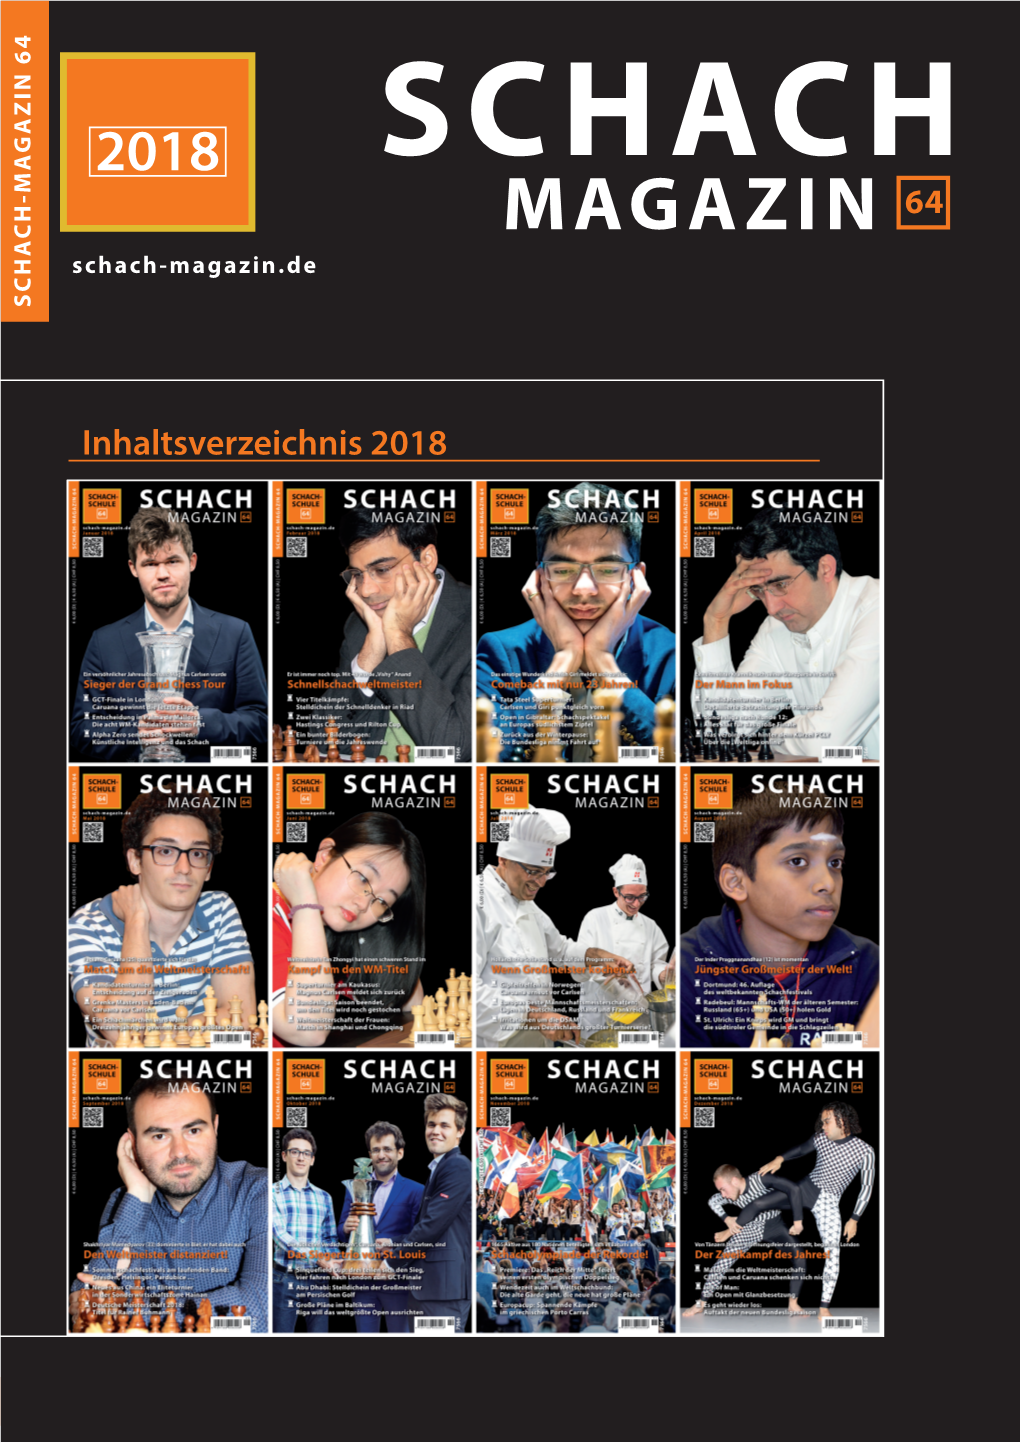 2018 SCHACH MAGAZIN 64 Schach-Magazin.De SCHACH-MAGAZIN 64 SCHACH-MAGAZIN